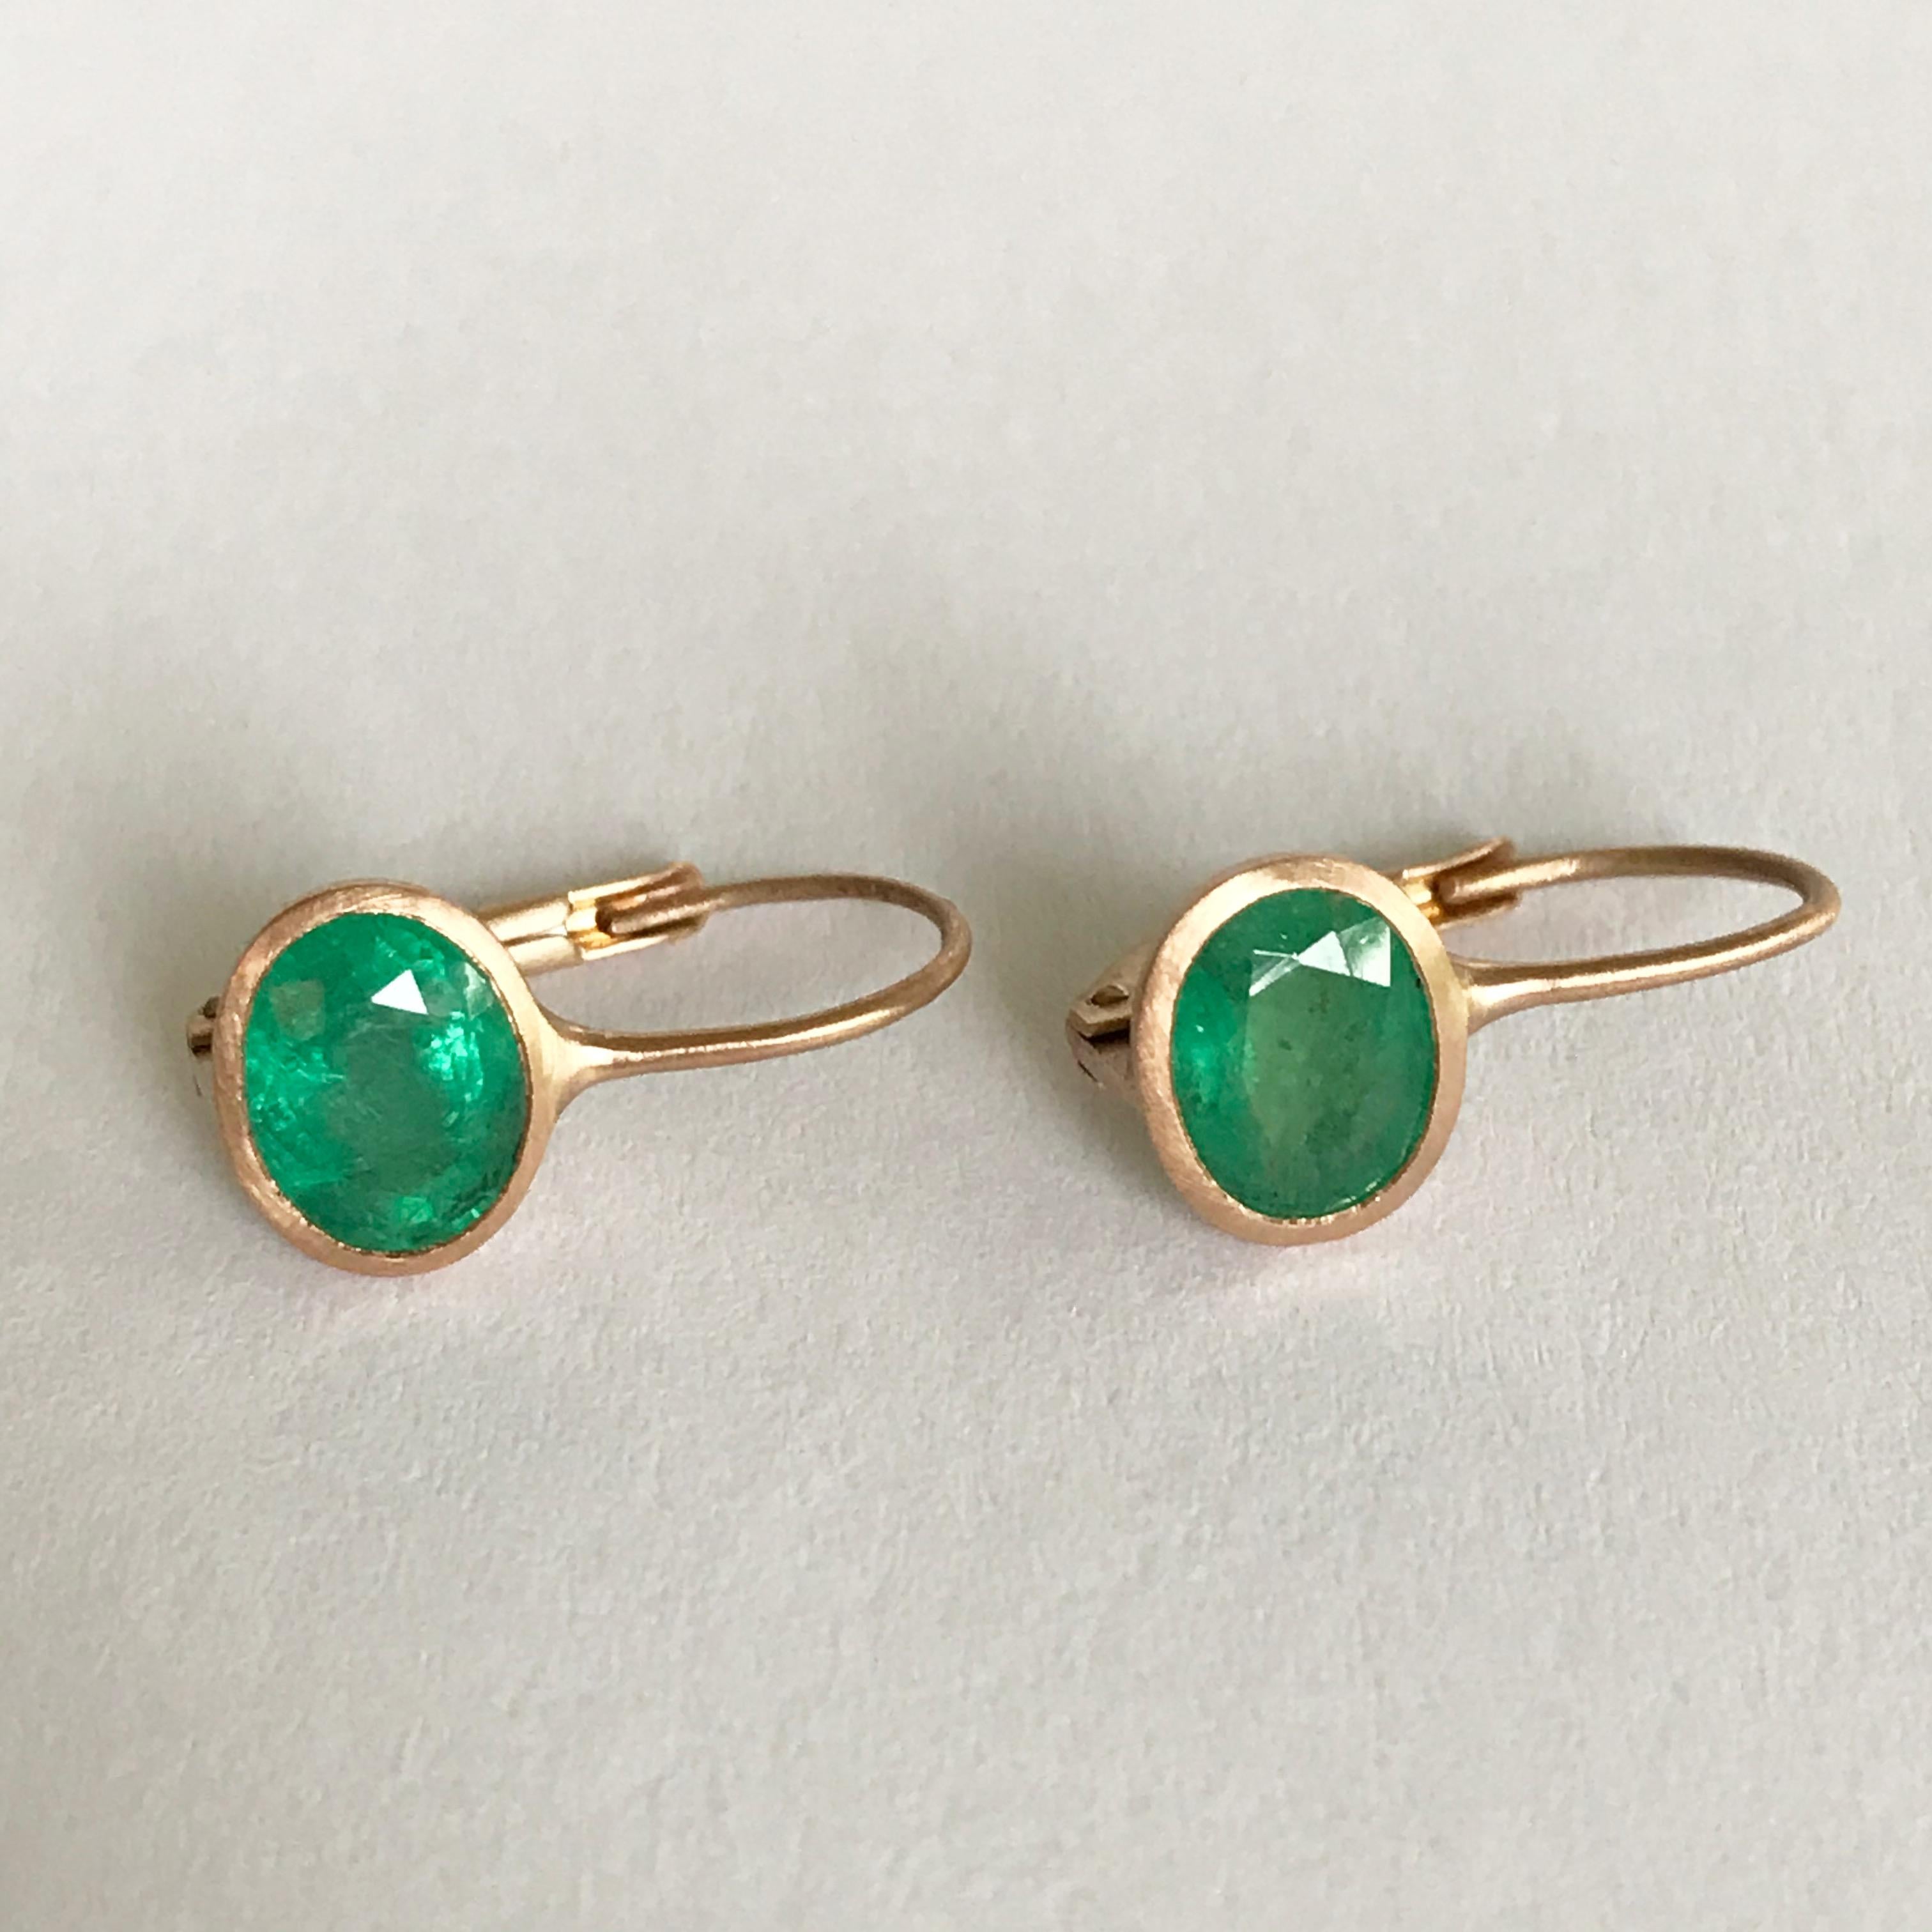 Women's Dalben 2, 63 Carat Oval Cut Emerald Rose Gold Earrings